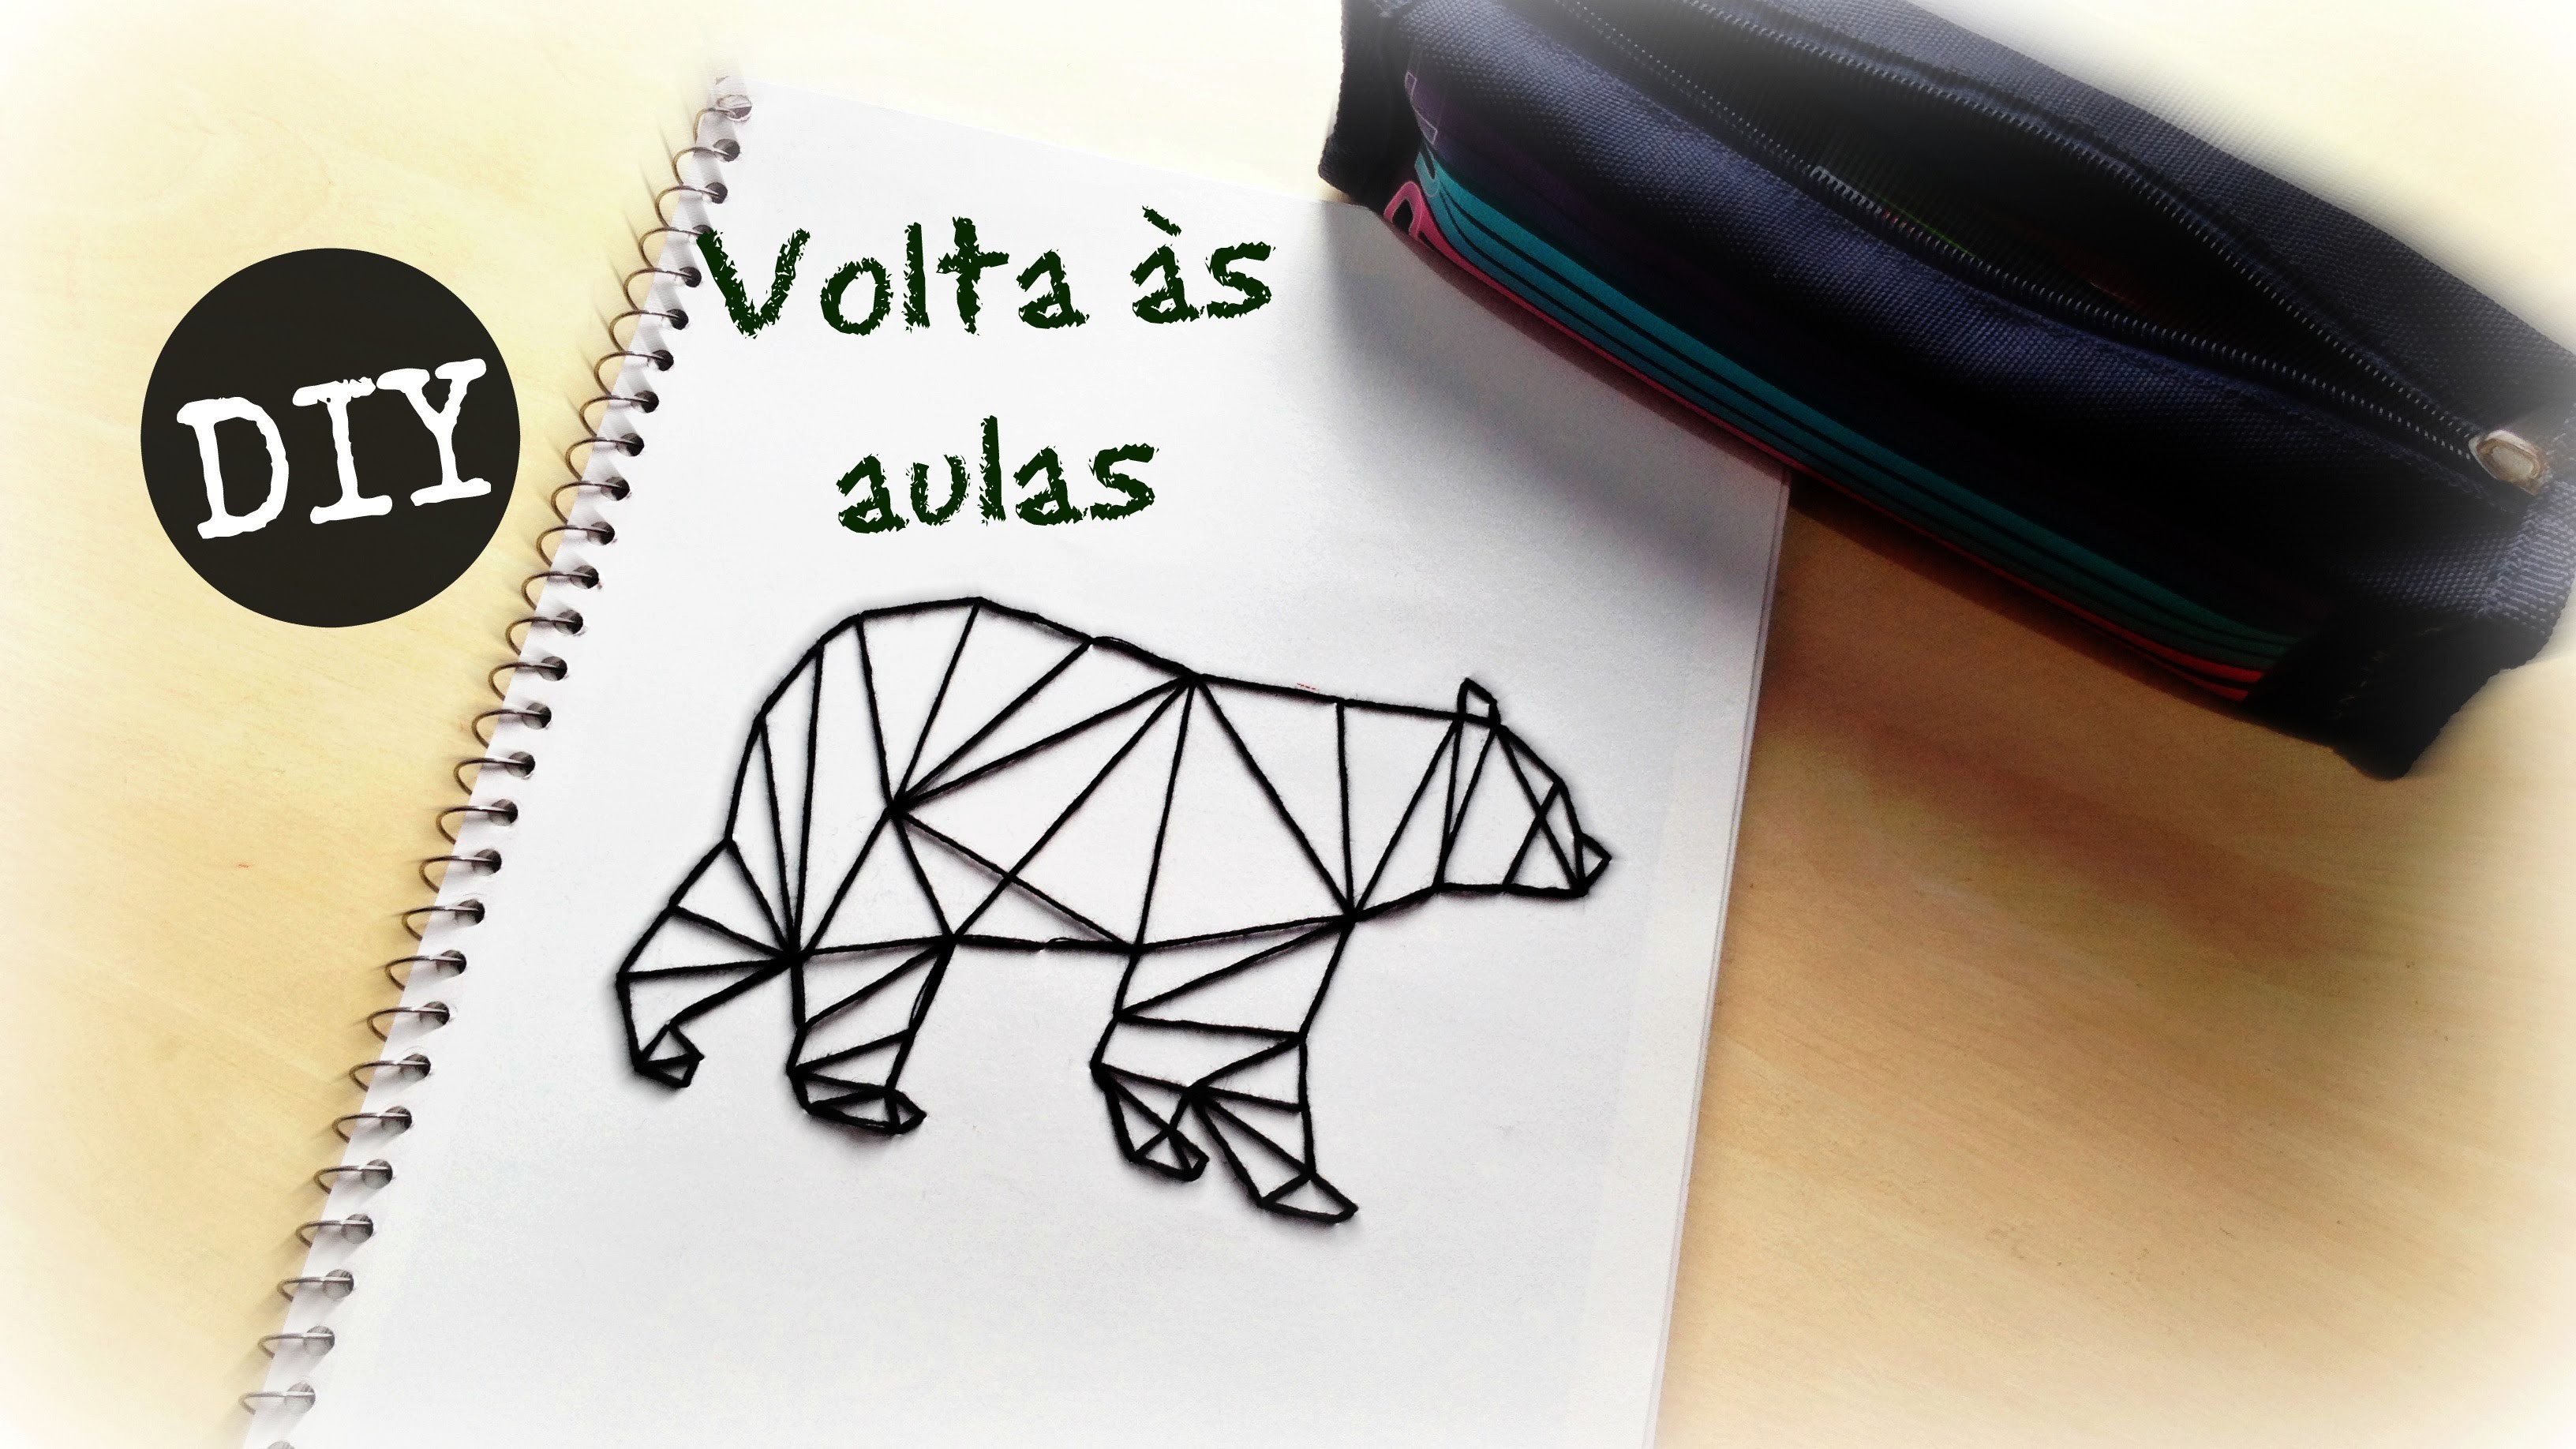 COMO FAZER CADERNO PERSONALIZADO - DIY - #inspire-se #voltaàsaulas